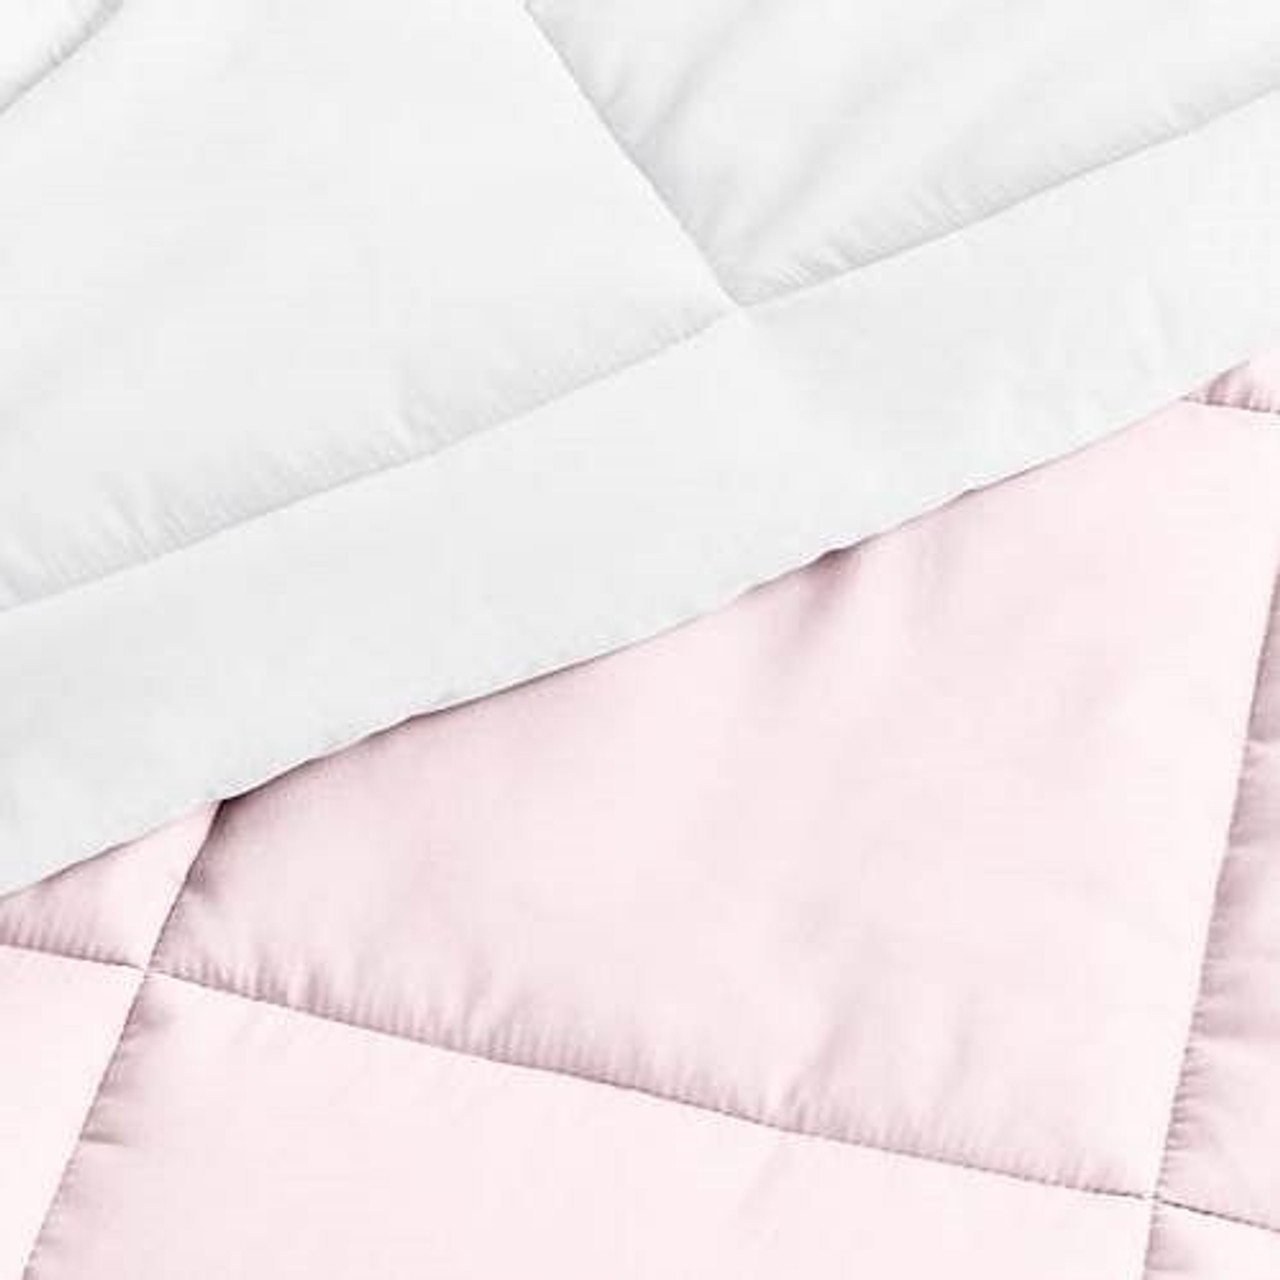 King/Cal King 3-Piece Microfiber Reversible Comforter Set Blush Pink and White